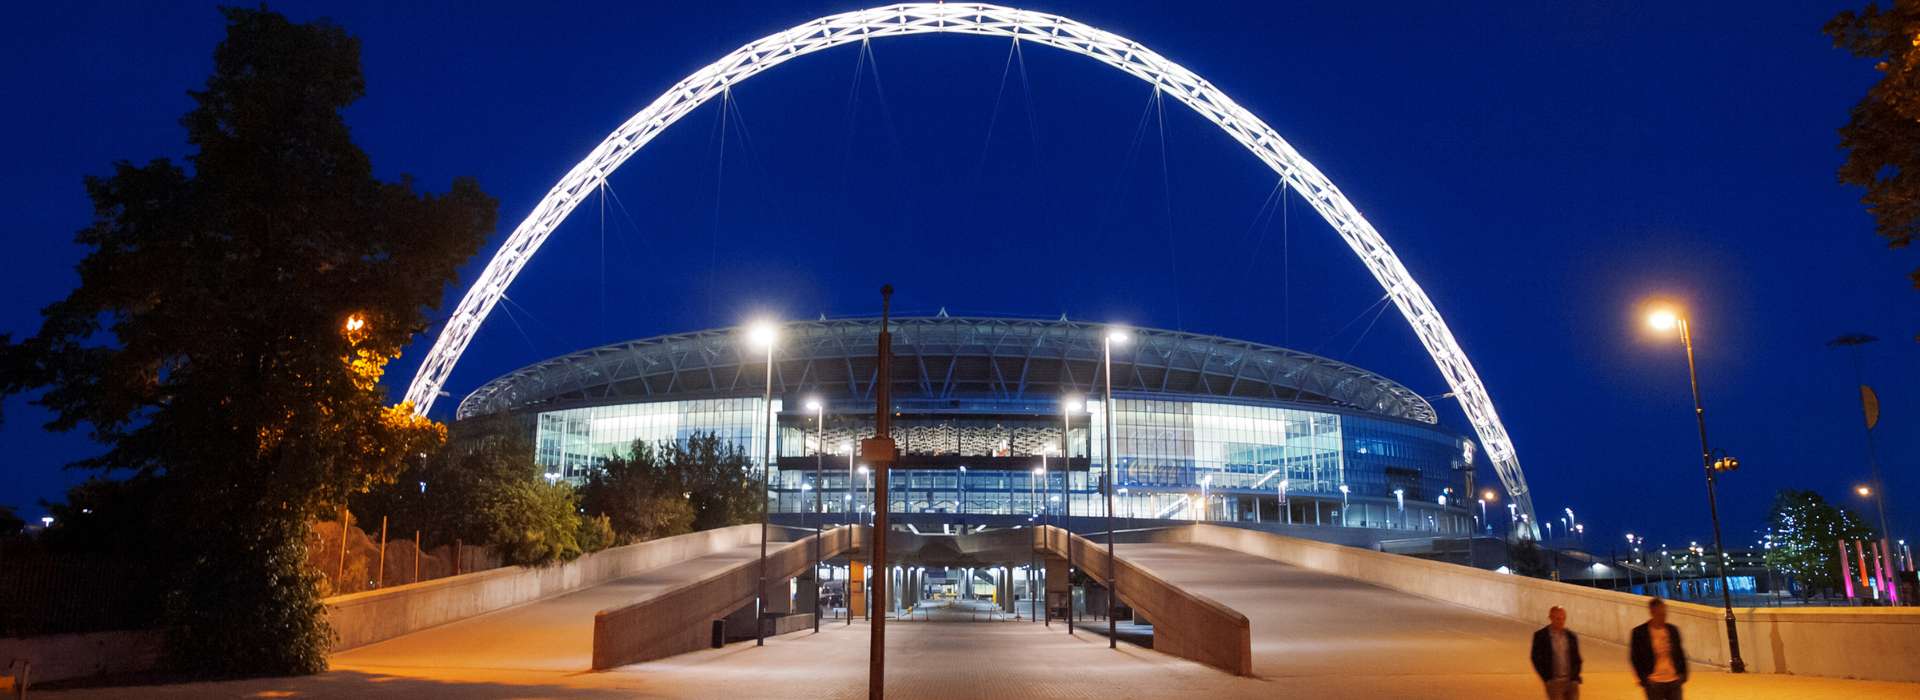 6 estadios en el Reino Unido que debes visitar durante tu viaje de estudios (3)